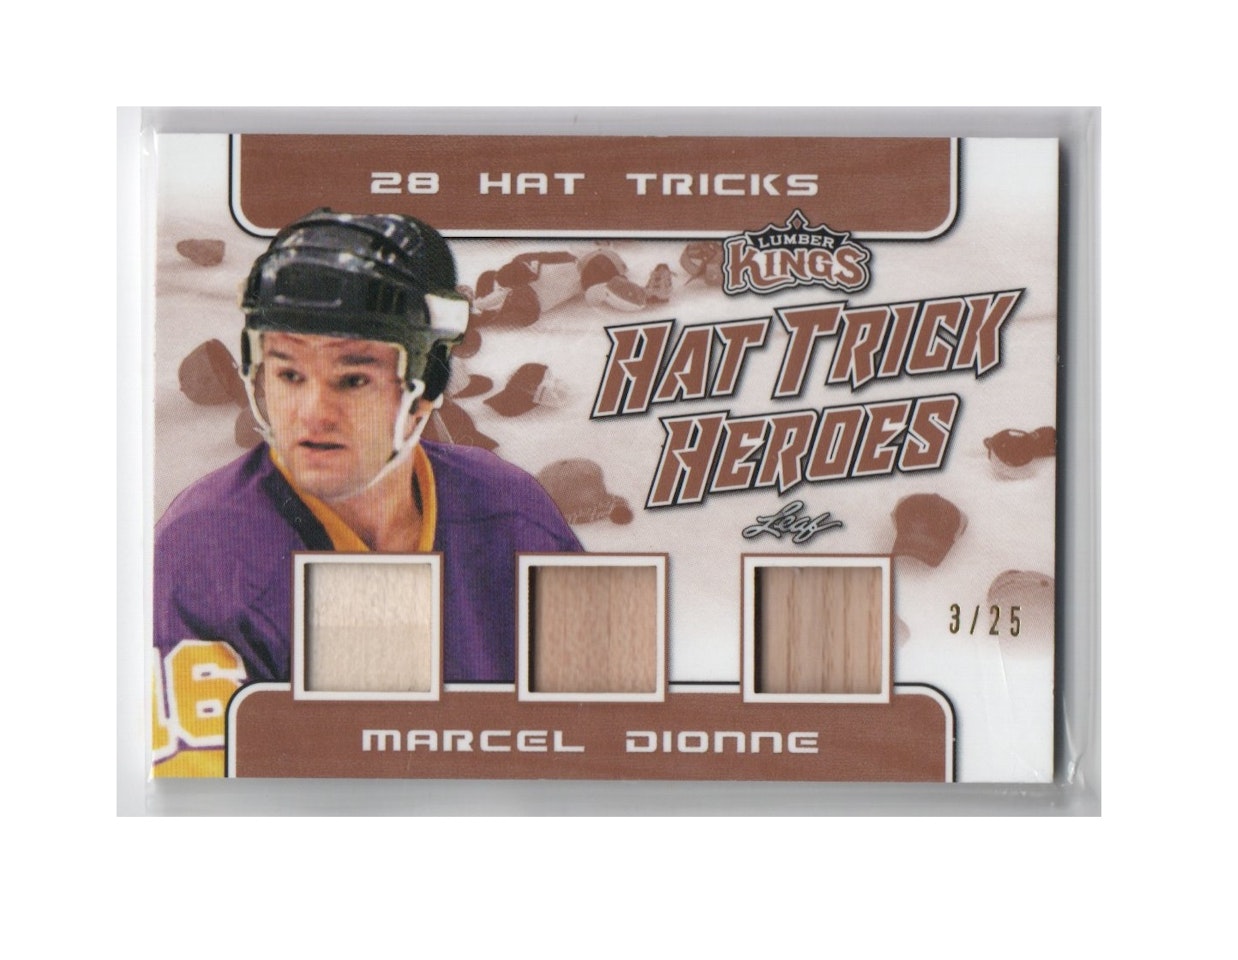 2019-20 Leaf Lumber Kings Hat Trick Heroes #HTH07 Marcel Dionne (250-D1-NHLKINGS)